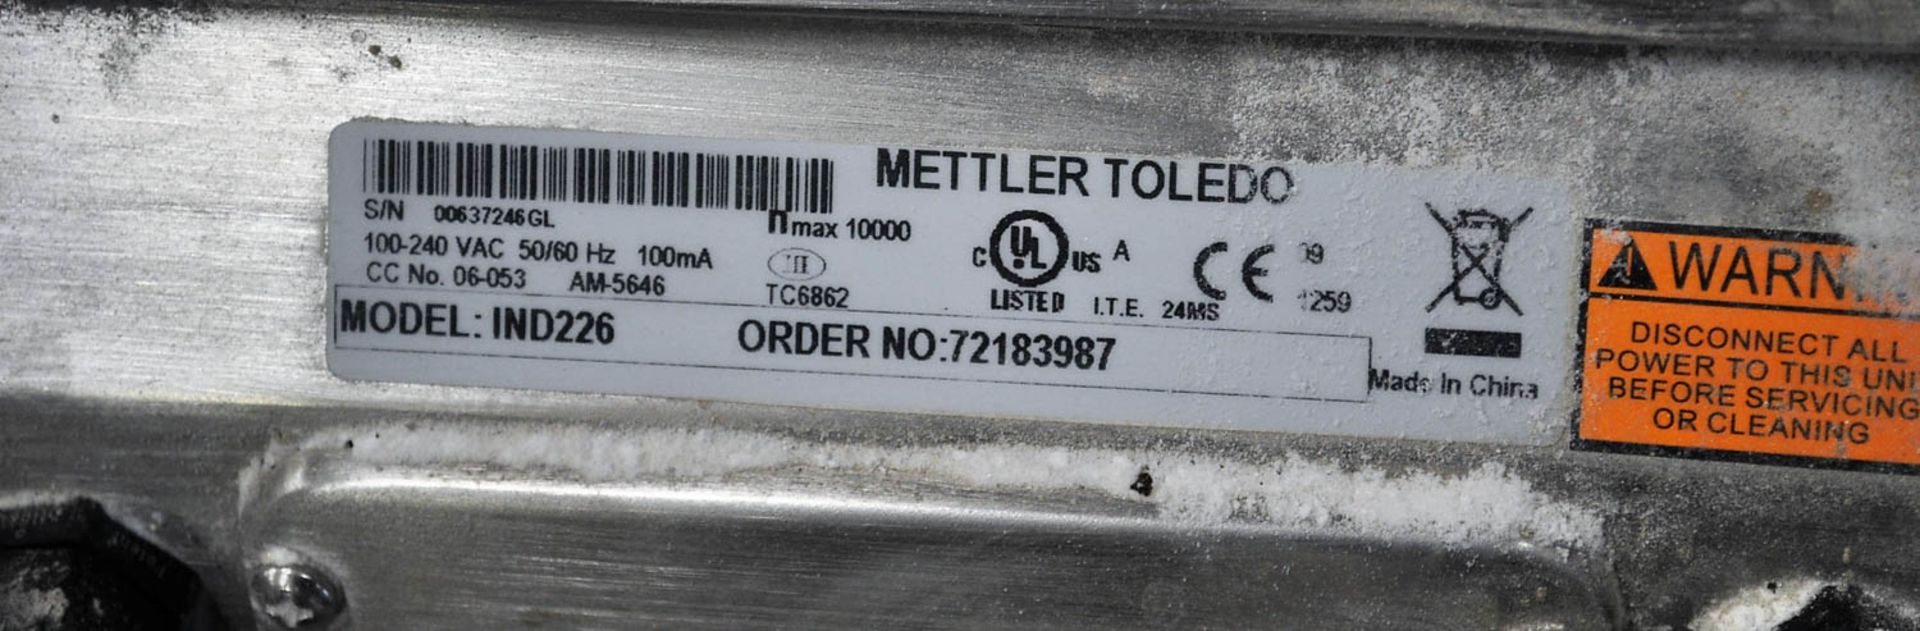 METTLER TOLEDO MDL. IND226 DIGITAL SCALE, WITH 32" X 24" PLATFORM BASE - Image 2 of 2